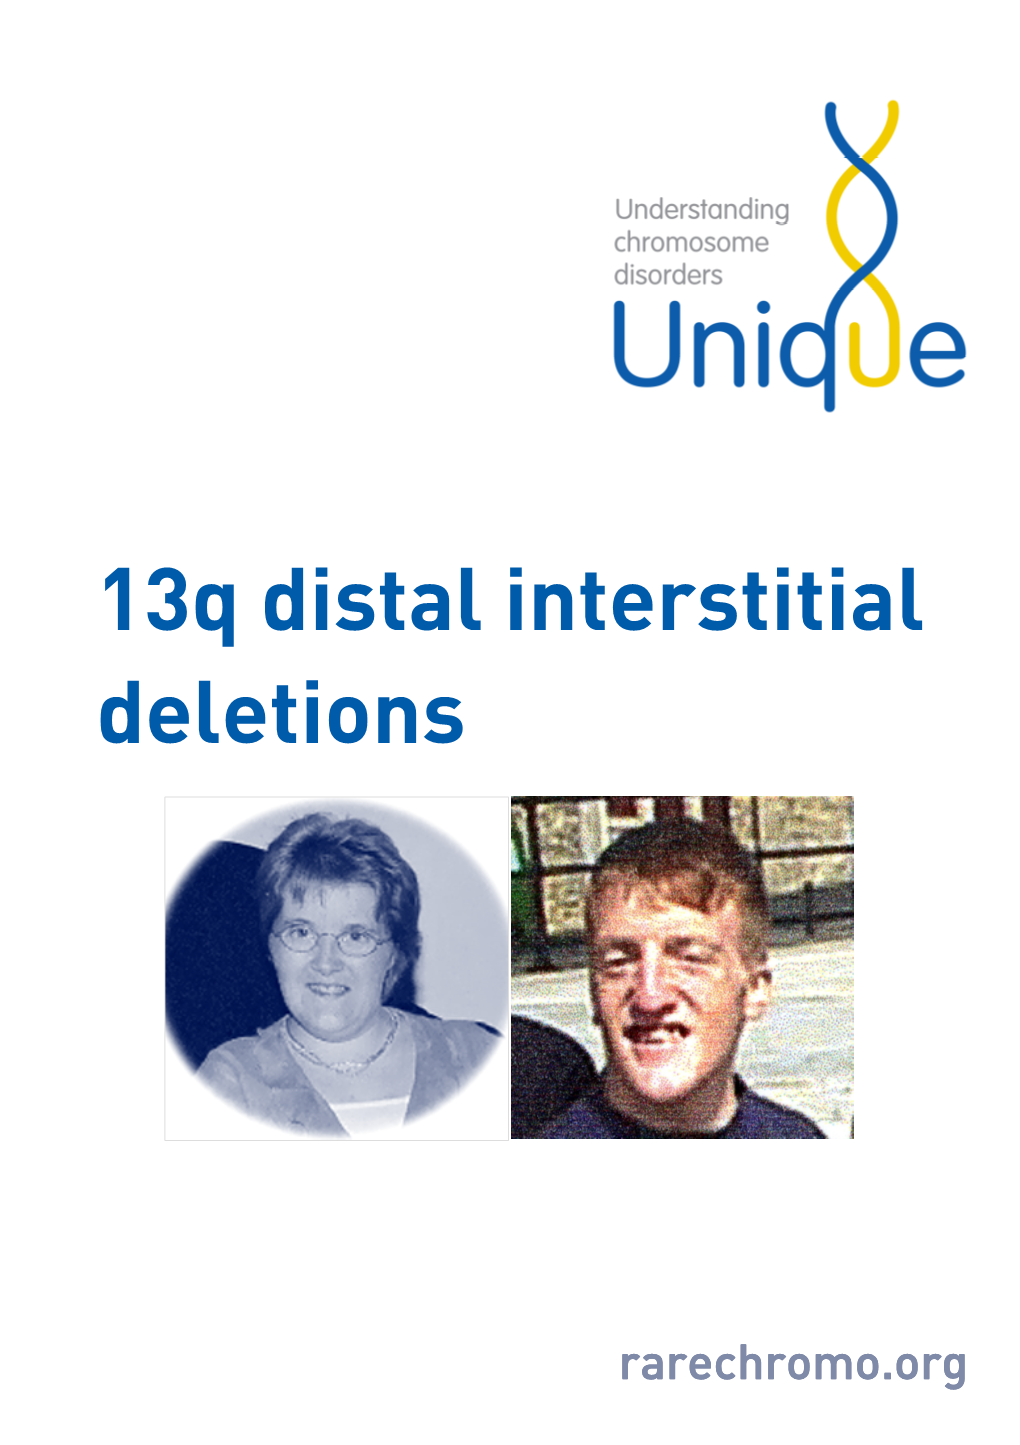 13Q Distal Interstitial Deletions FTNW